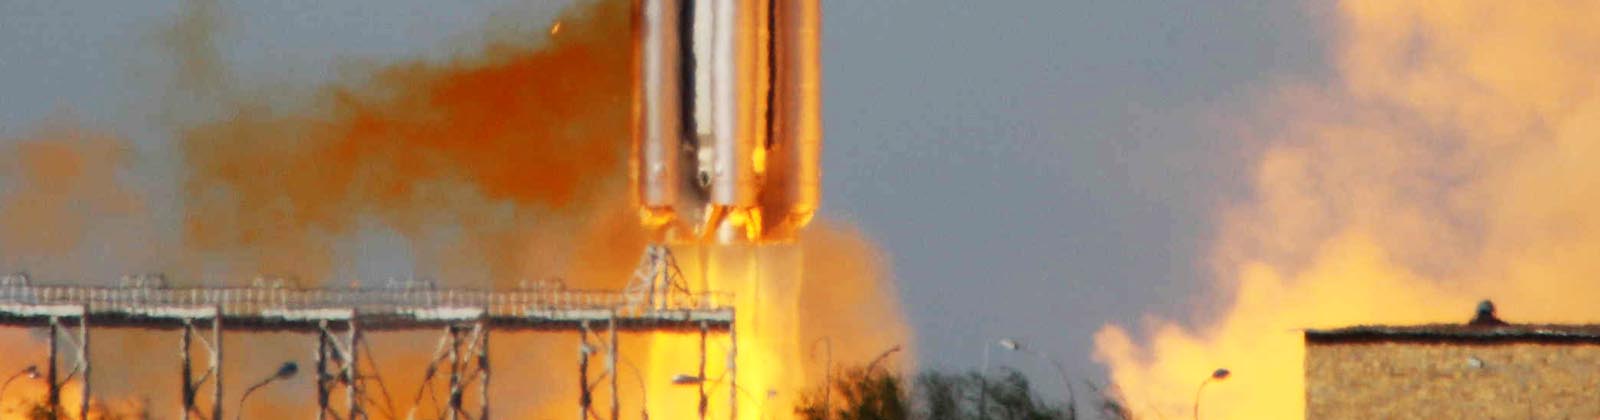 Lancement du satellite SES-1 par une fusée Proton